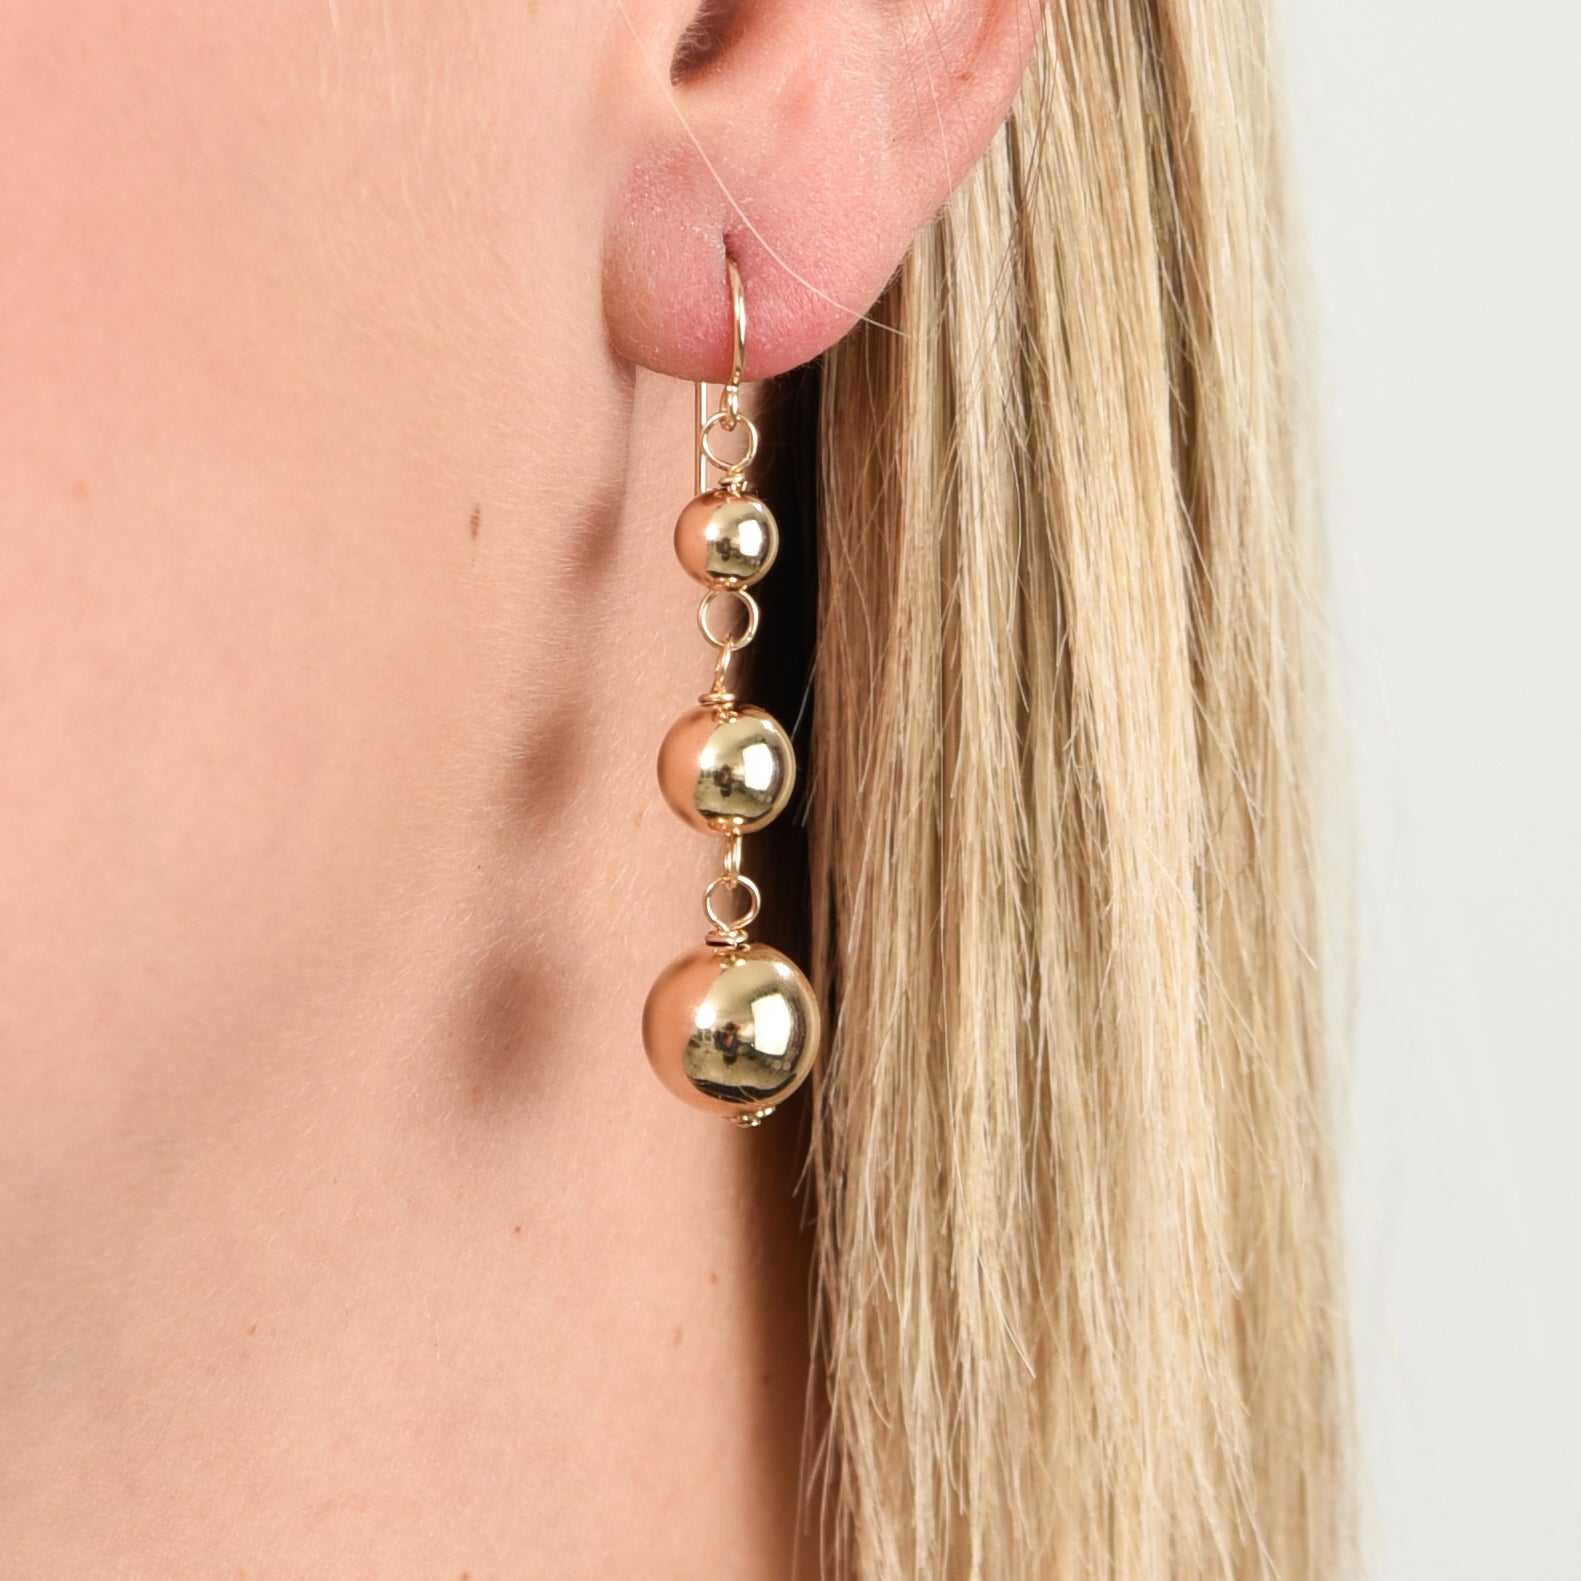 14k Gold Filled Ball Earrings